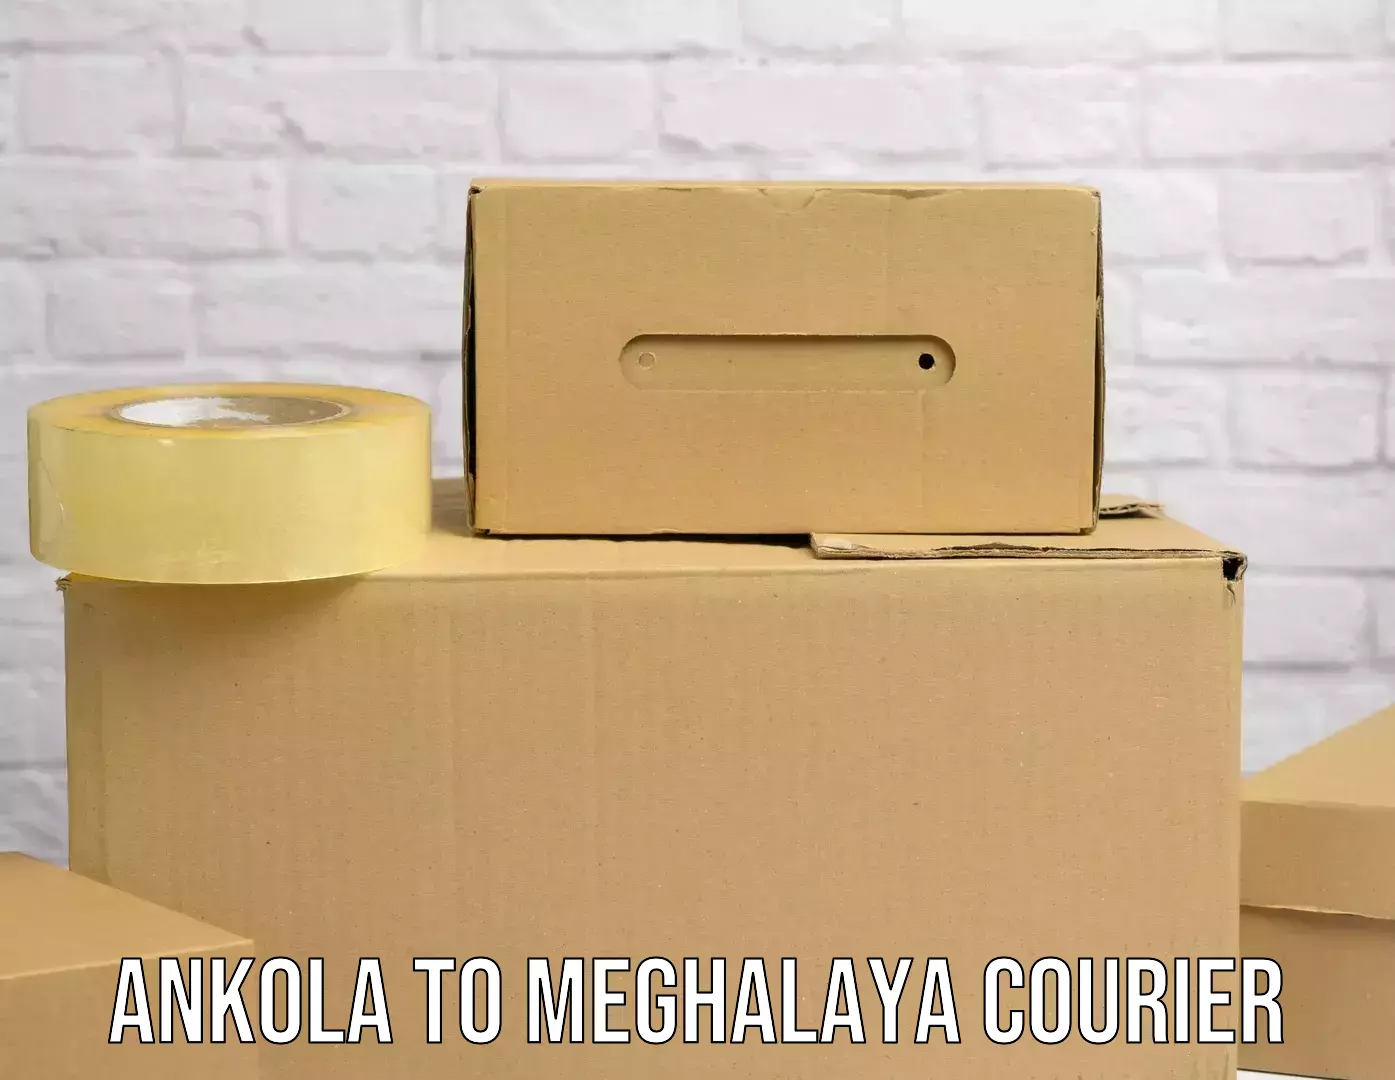 High-capacity shipping options Ankola to Jowai